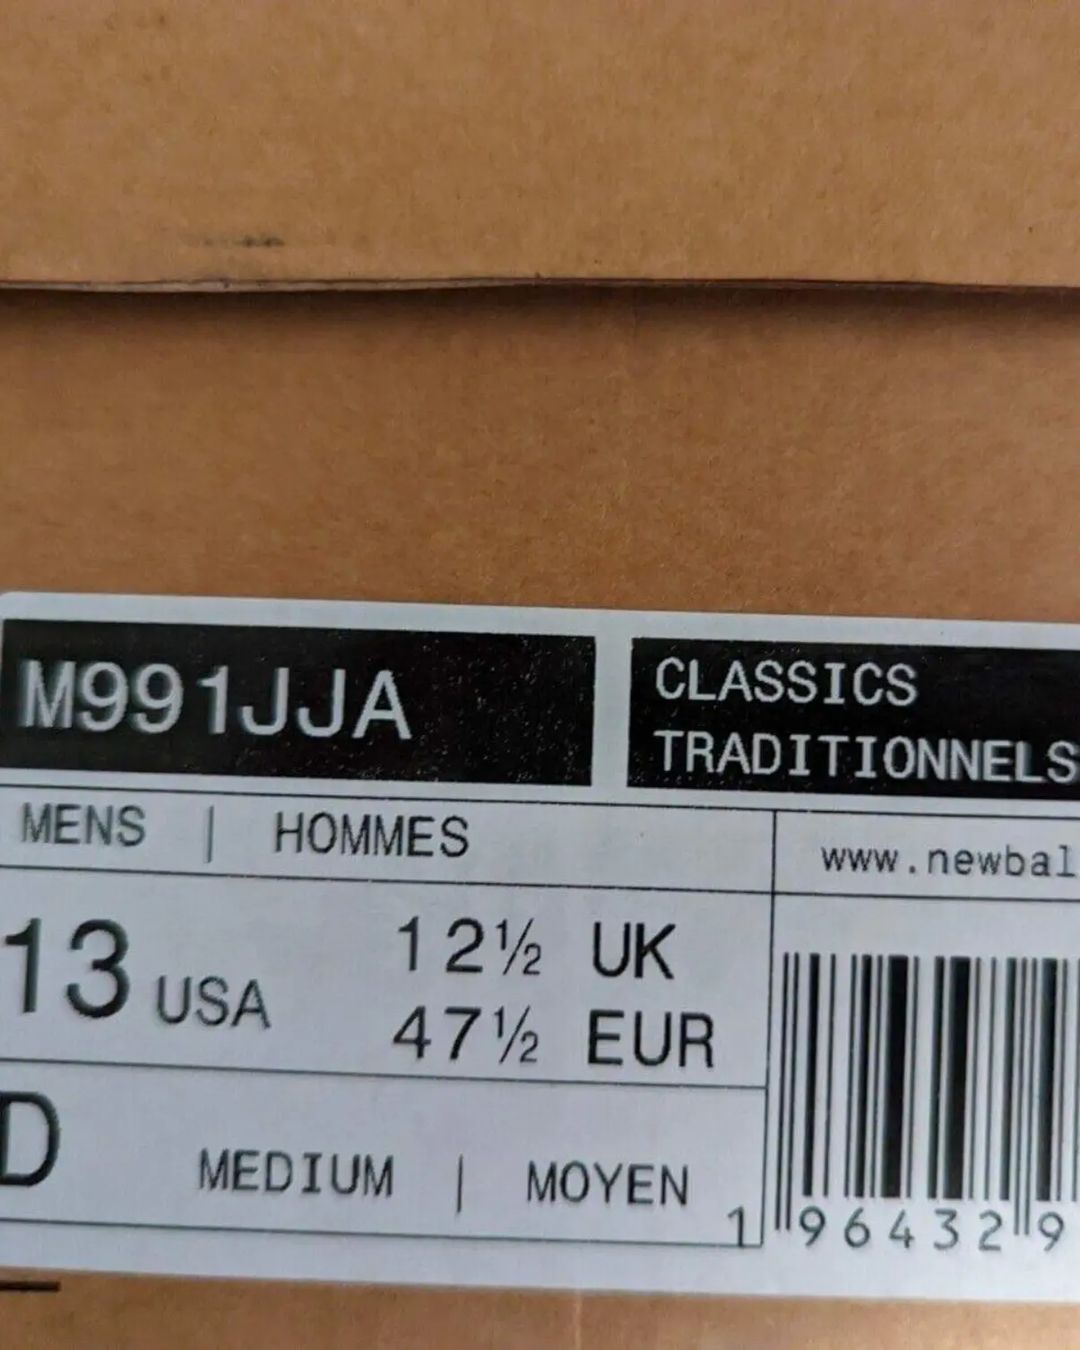 【国内 2/17 発売】JJJJound × New Balance M991 JJA “Grey” (ジョウンド ニューバランス)